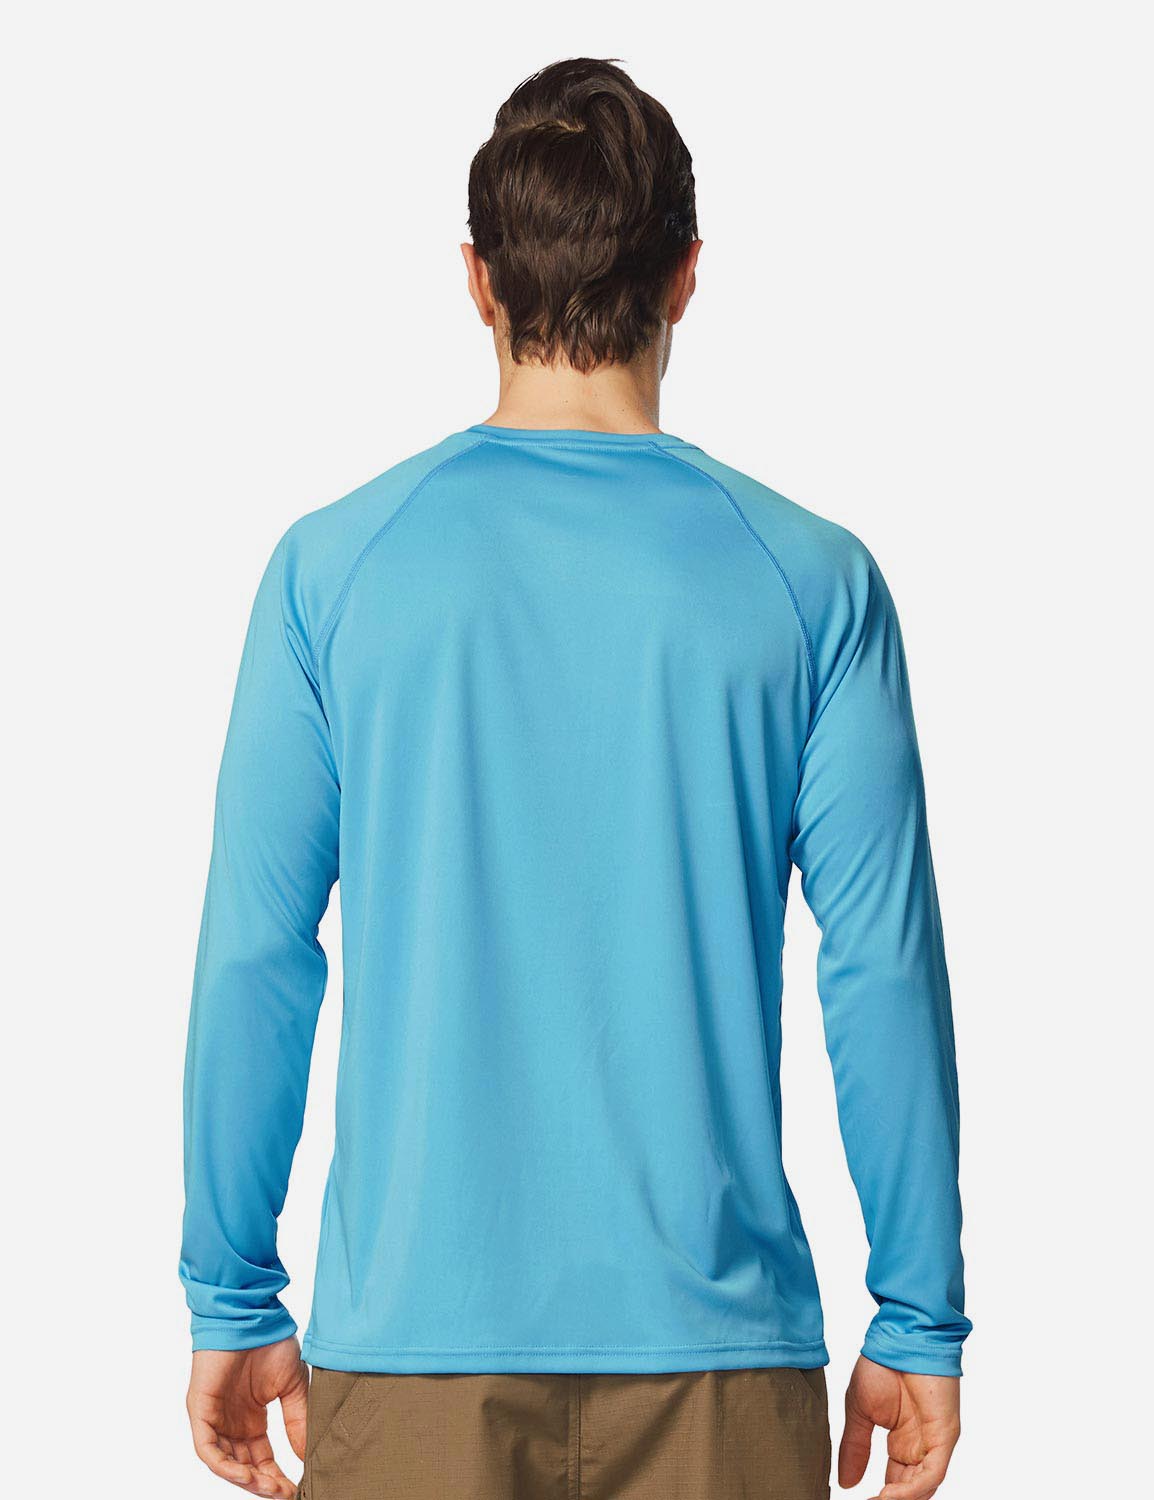 Baleaf Men's UPF50+ Long Sleeved Loose Fit Casual T-Shirt aga002 Blue Back